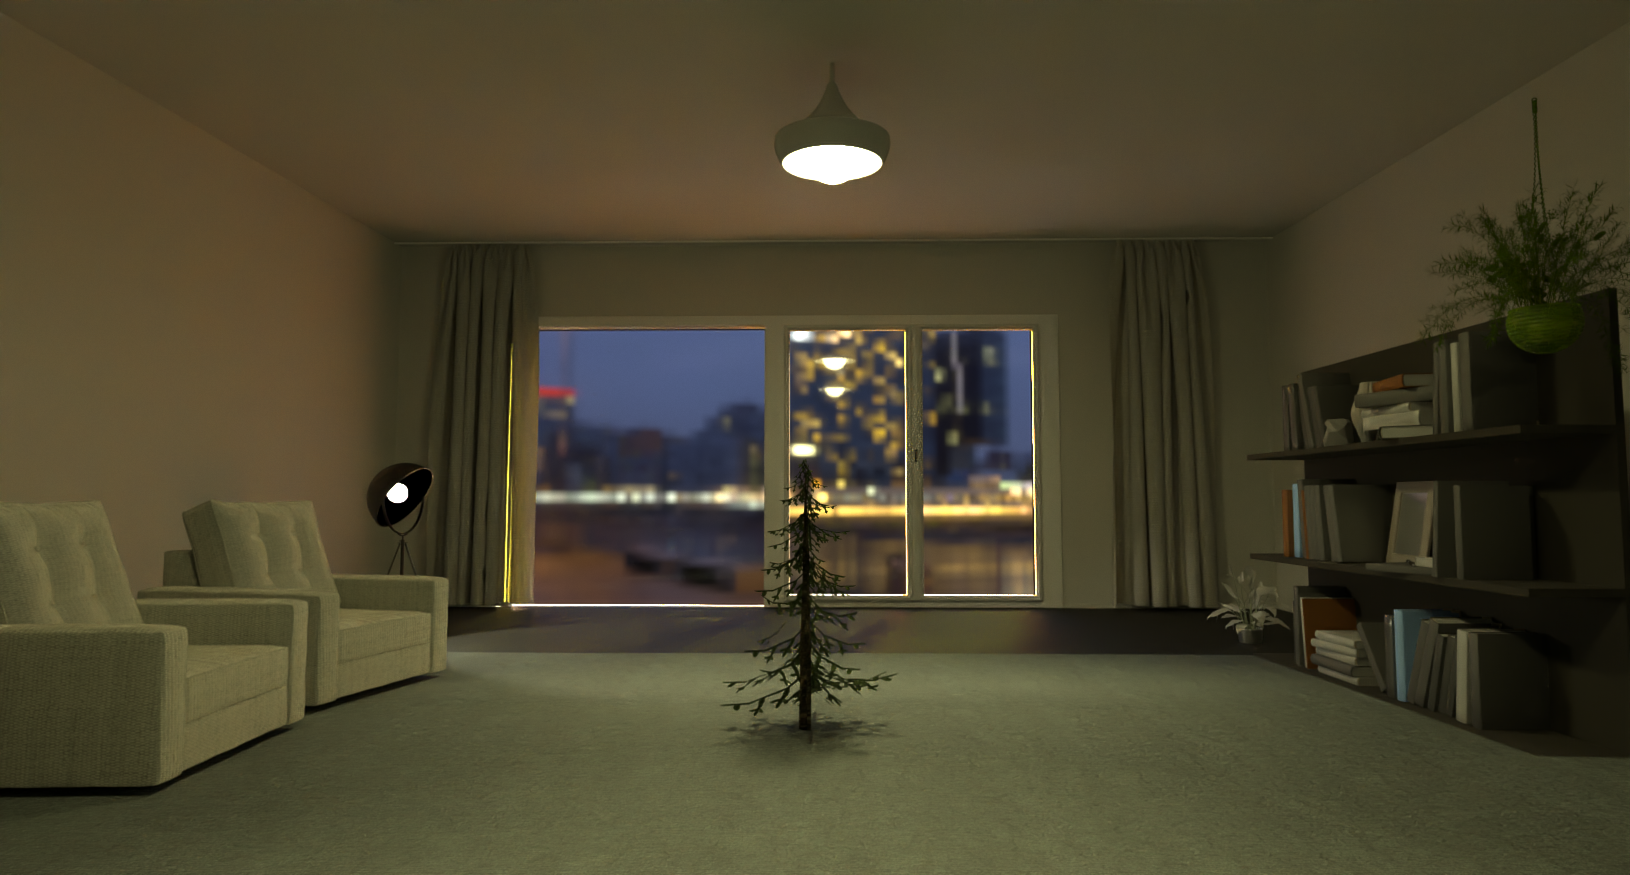 Lookdev render of the room